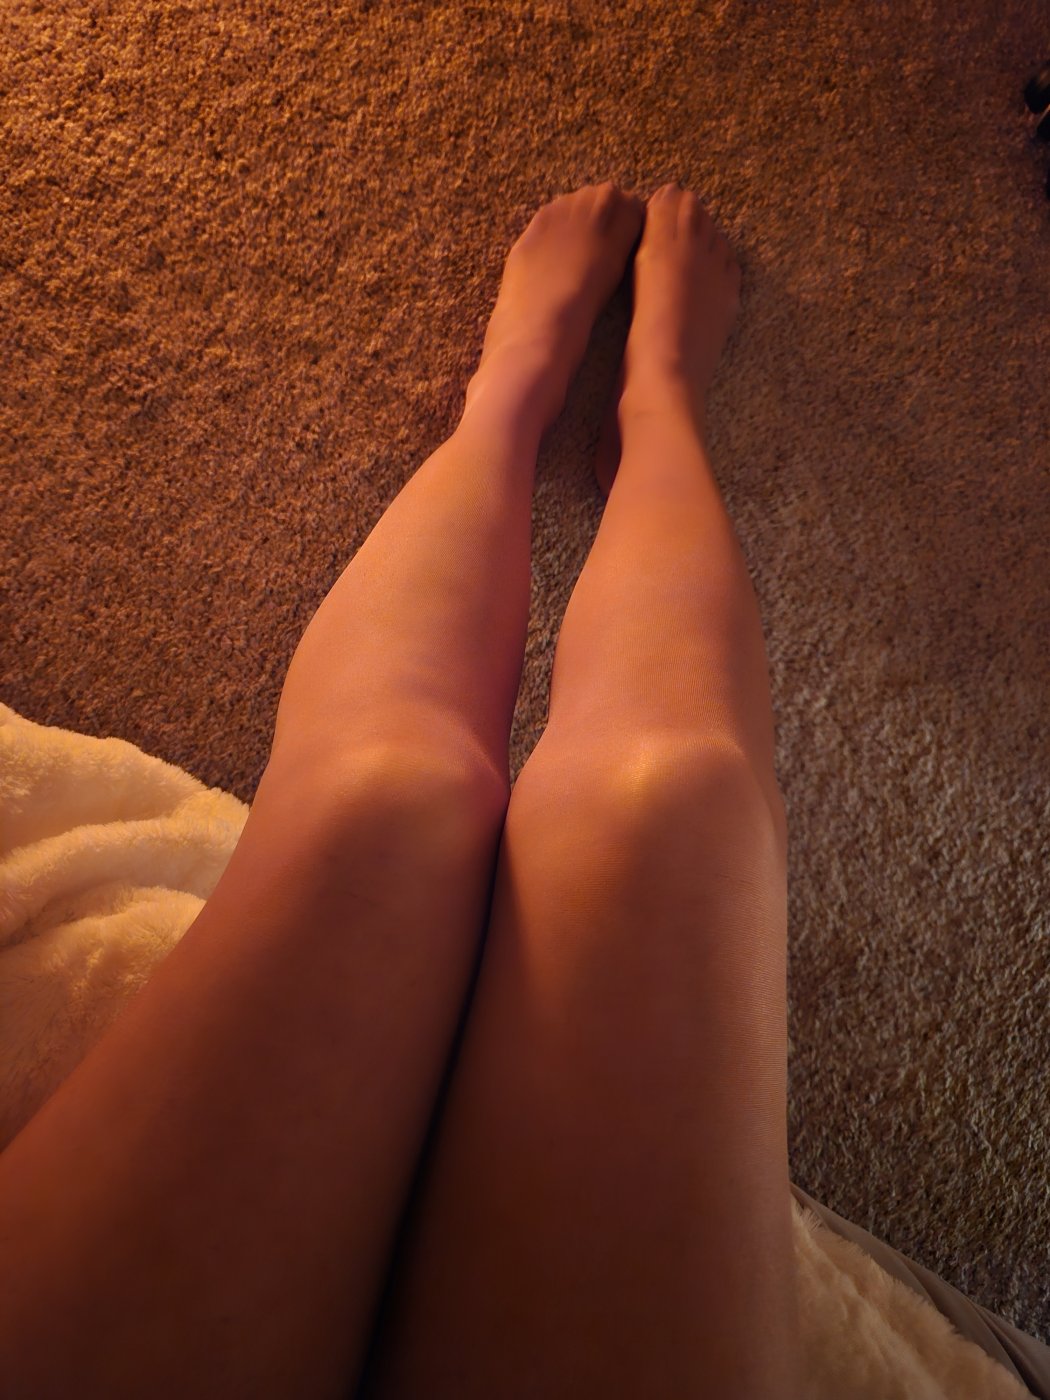 Long legs in Panty Hose